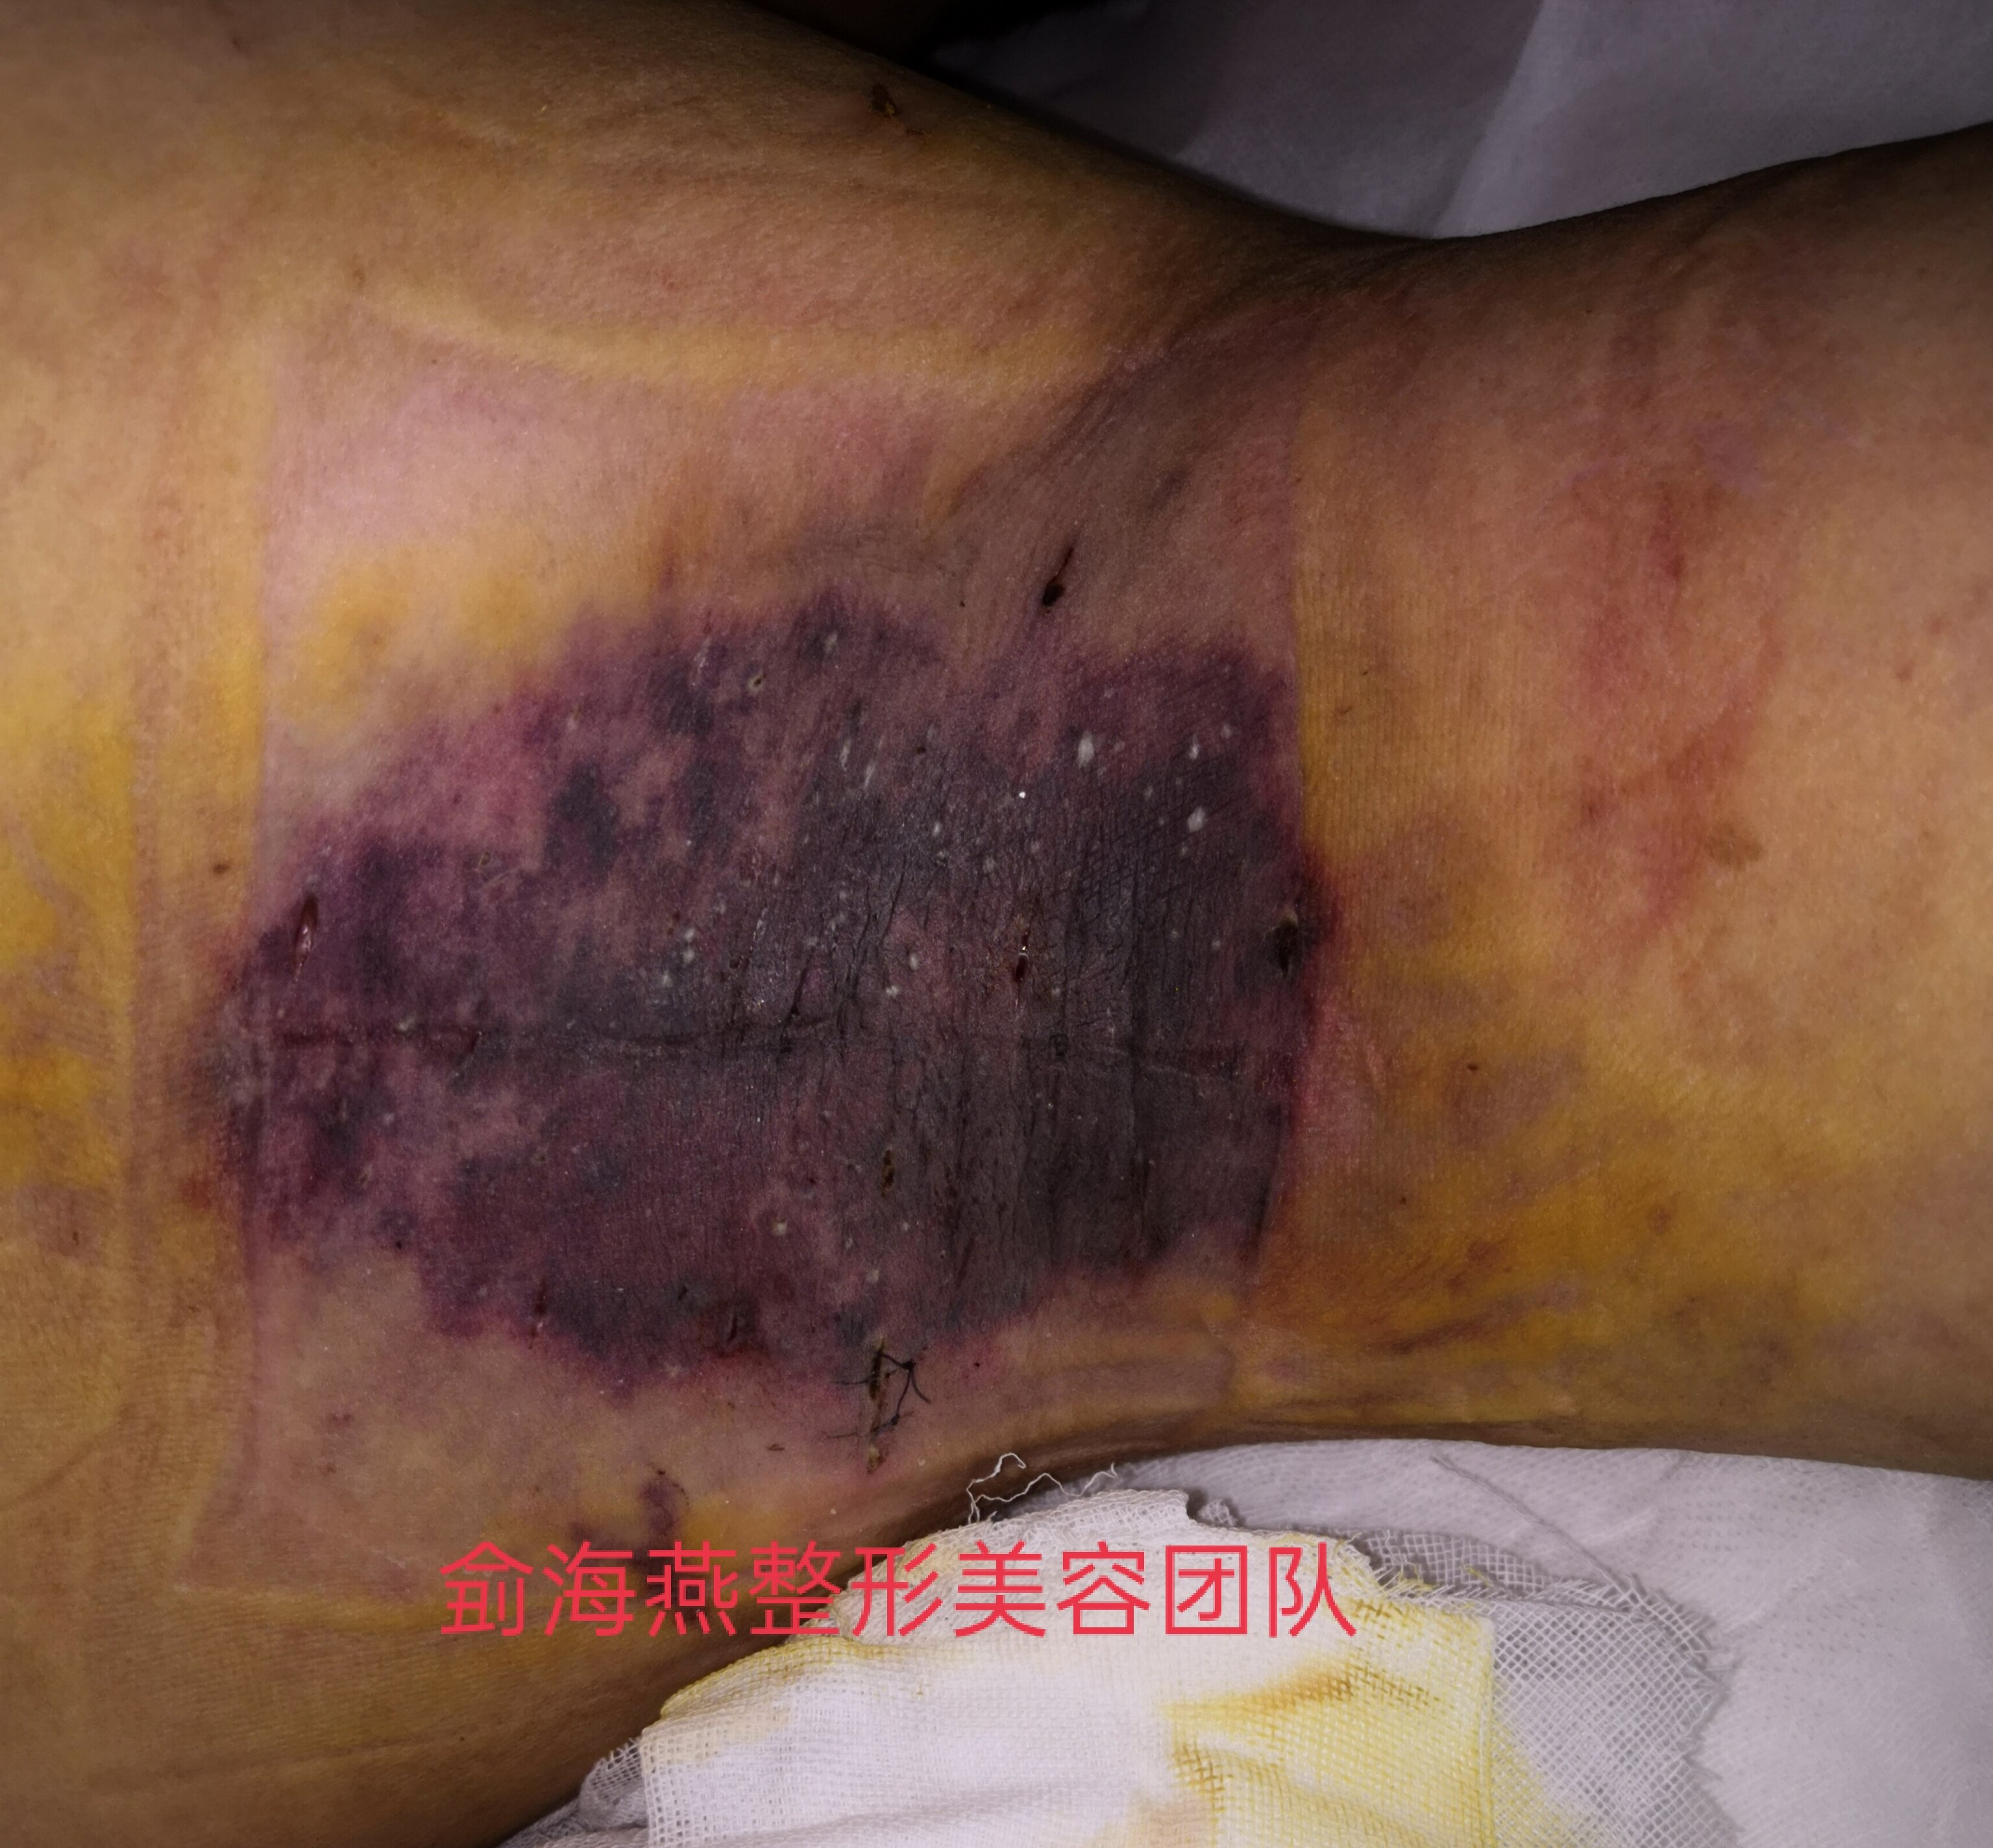 所谓的微创手术导致皮肤坏死的案例河南省人民医院整形外科侴海燕专家